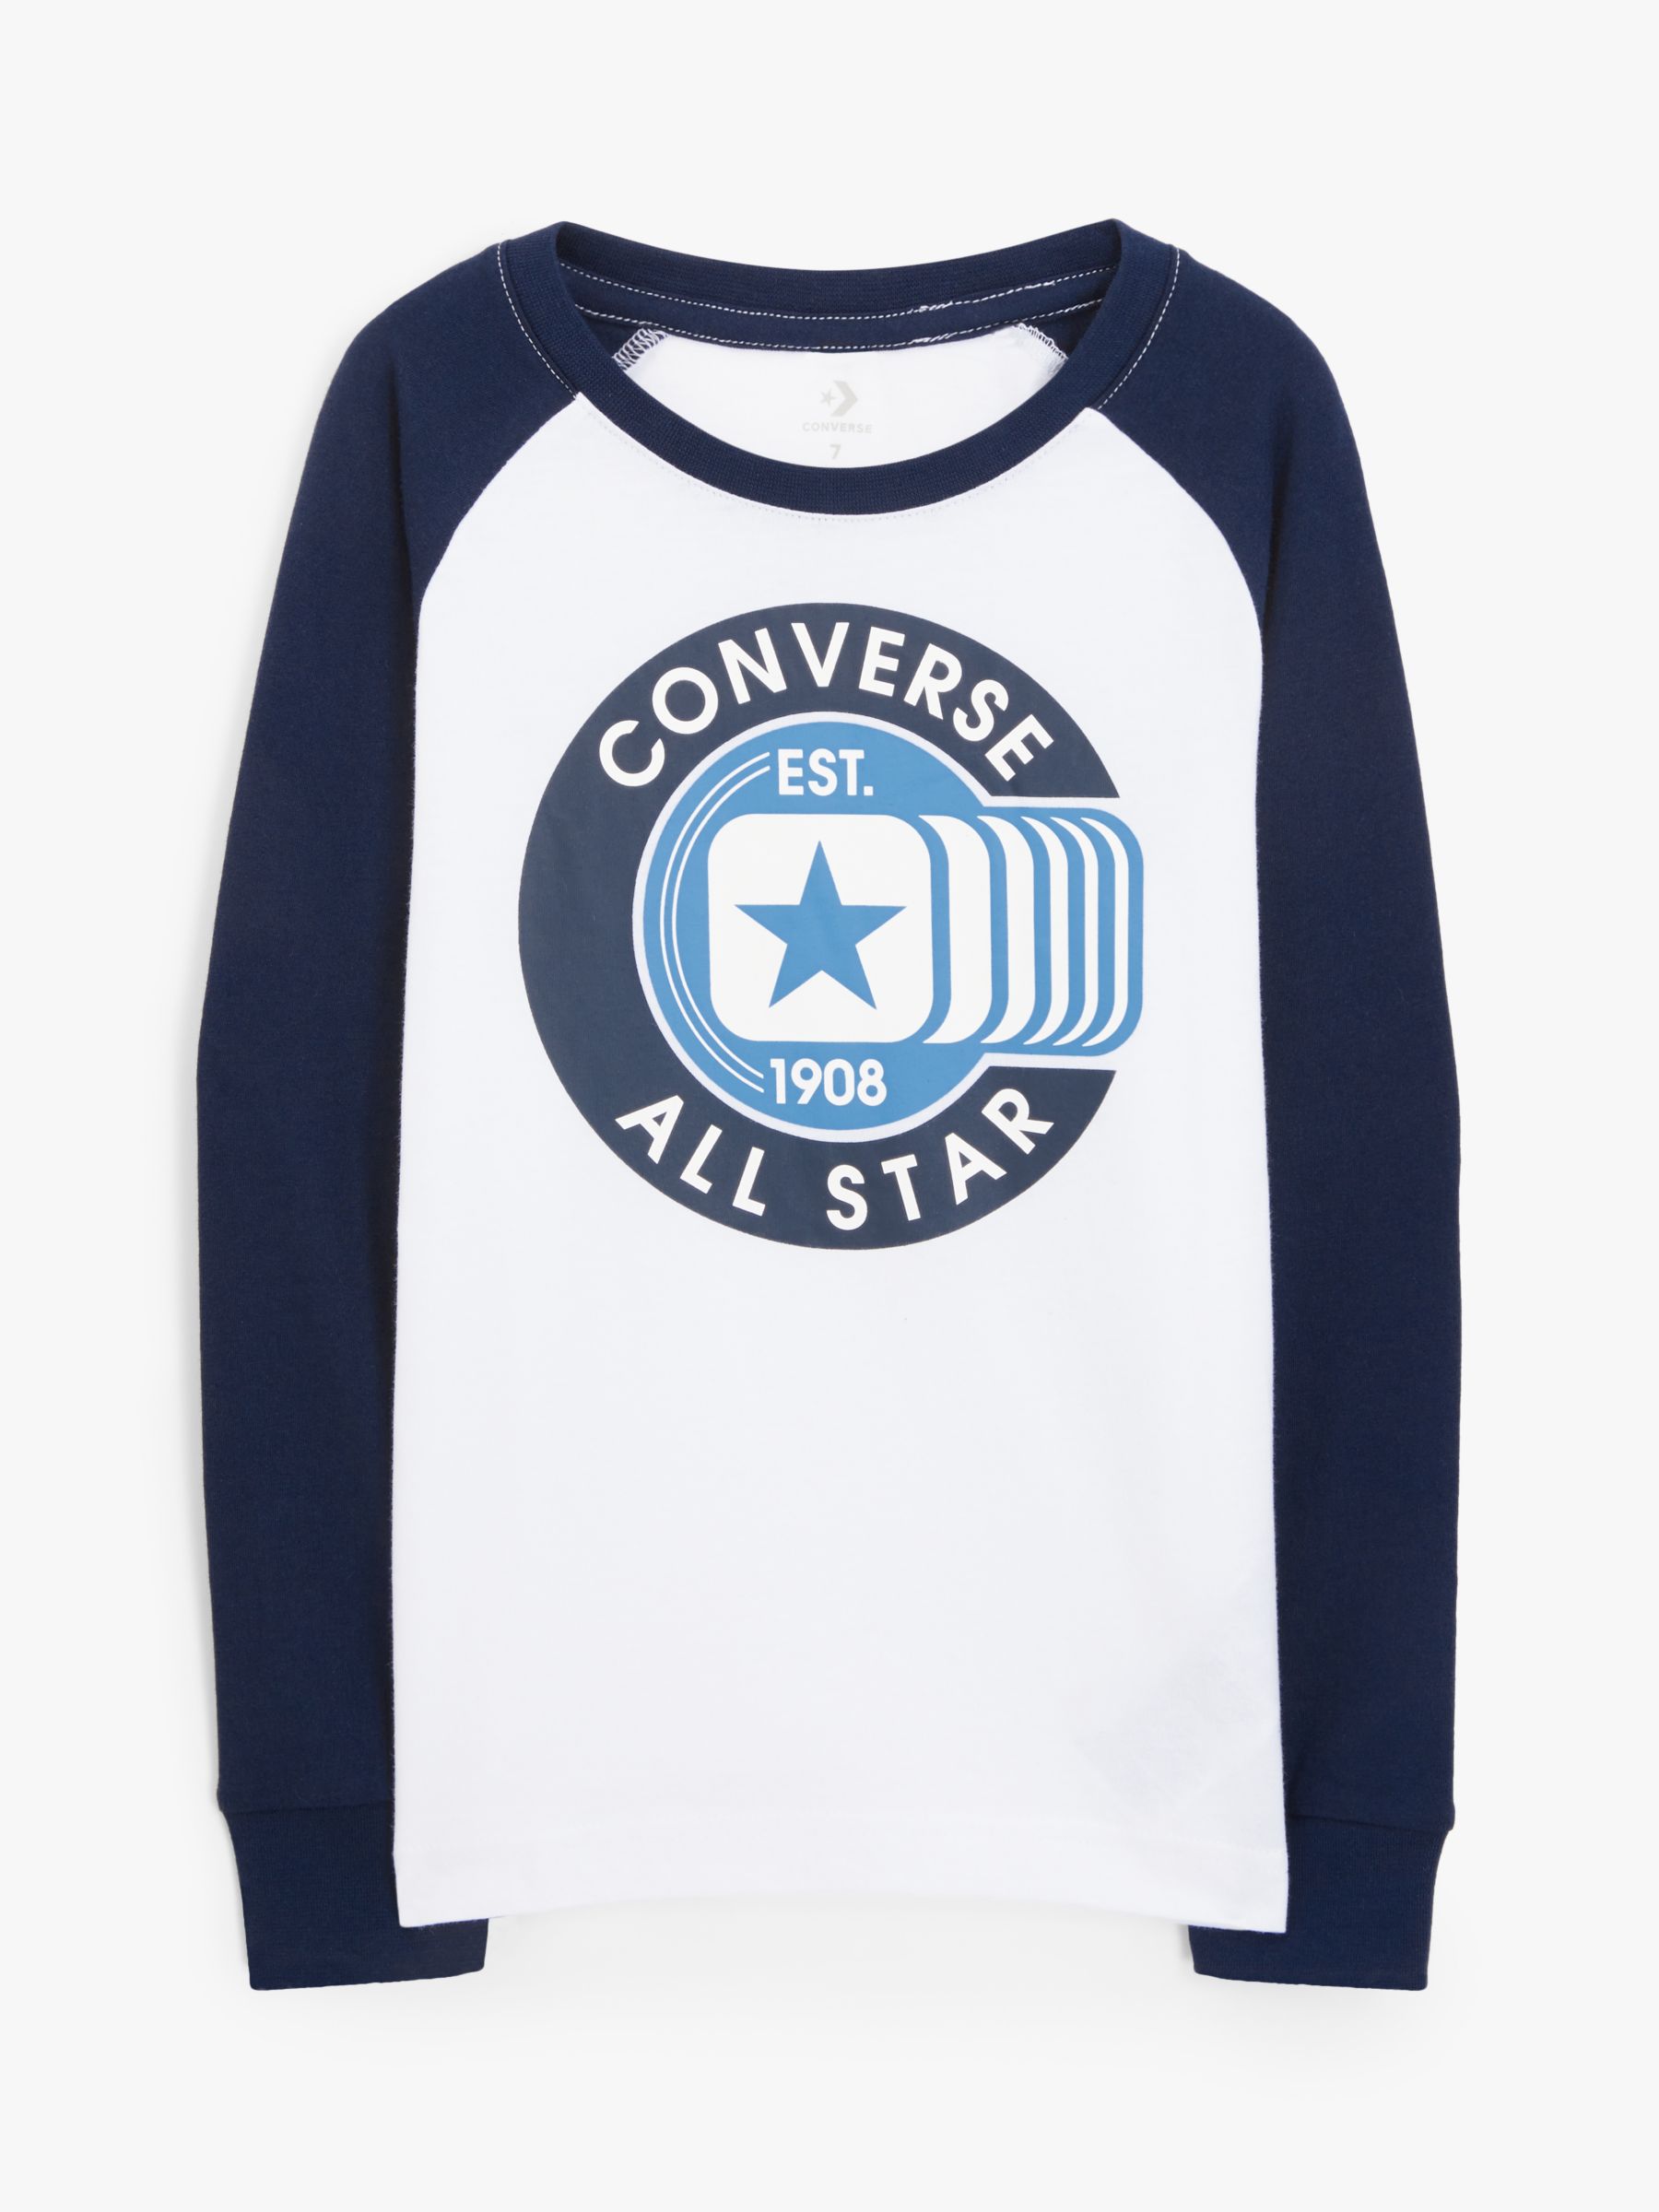 converse online t shirt